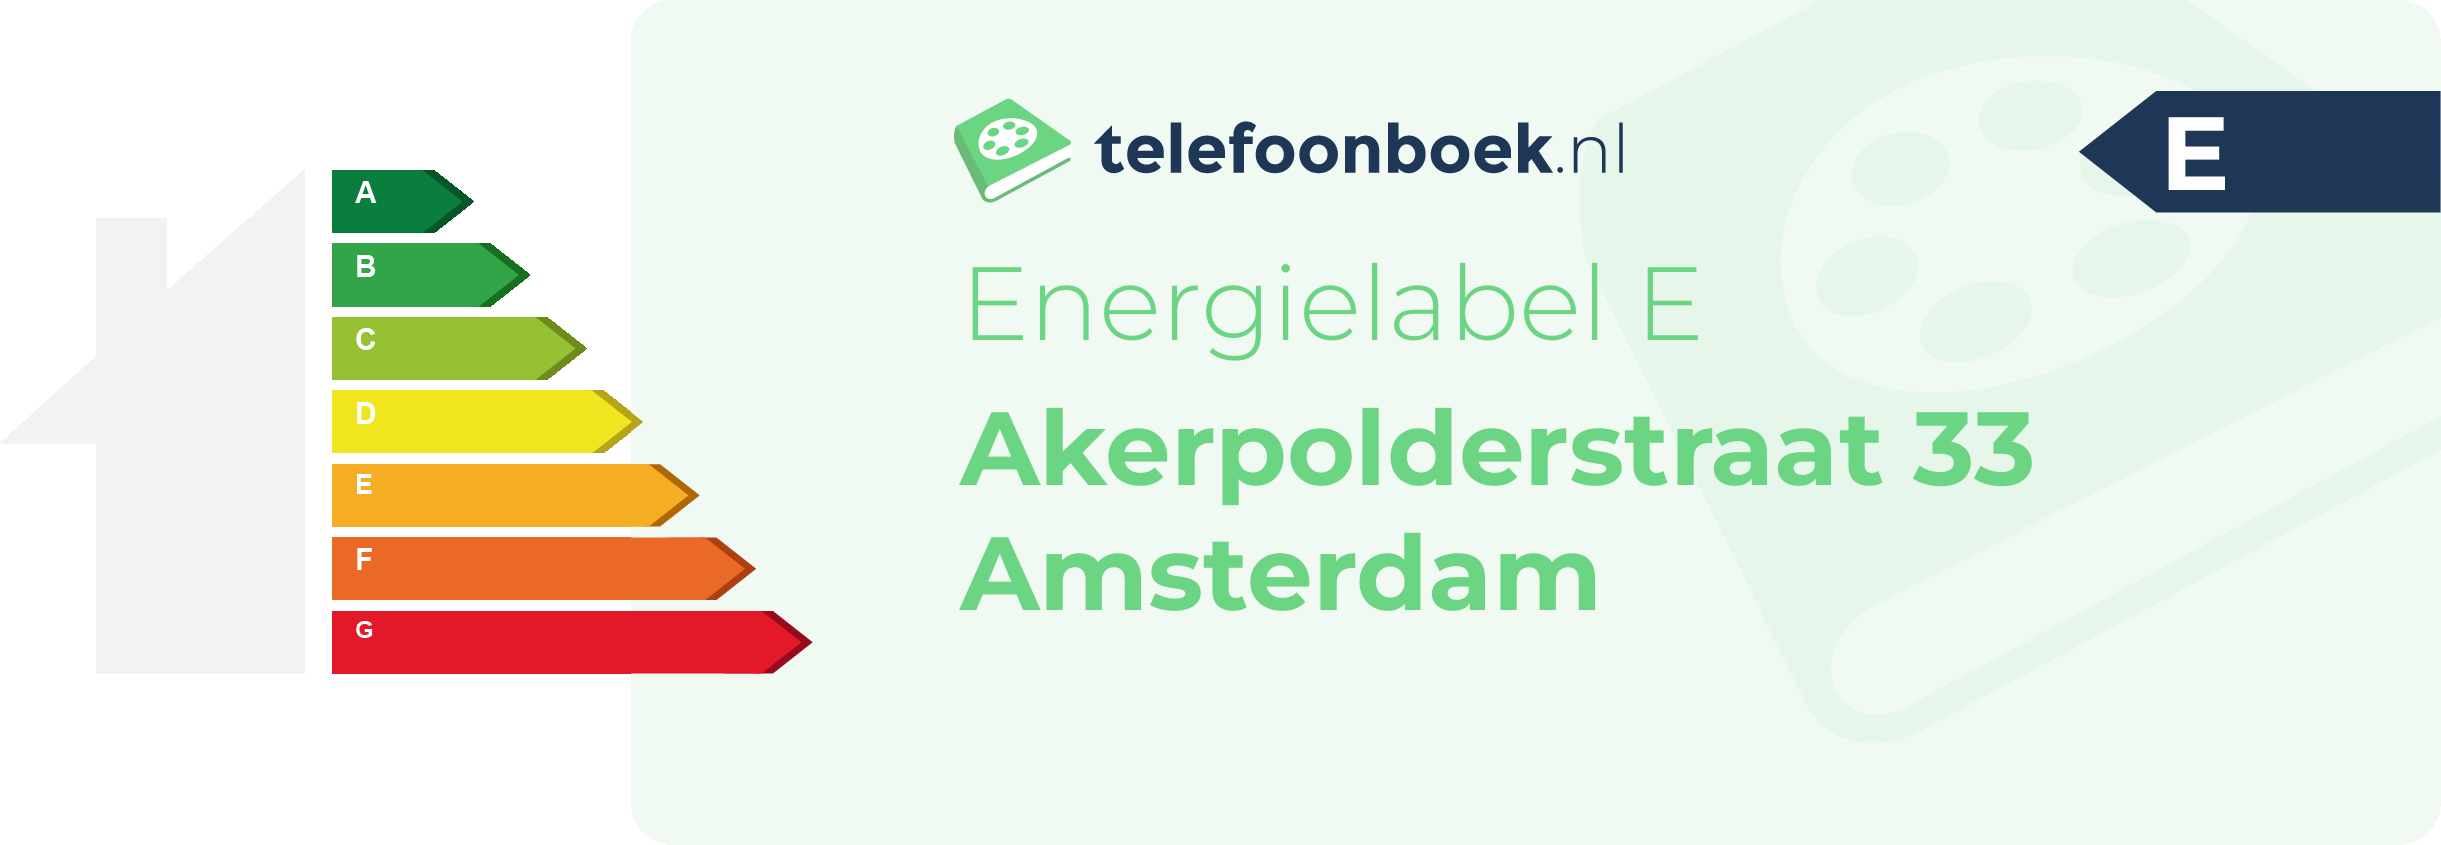 Energielabel Akerpolderstraat 33 Amsterdam